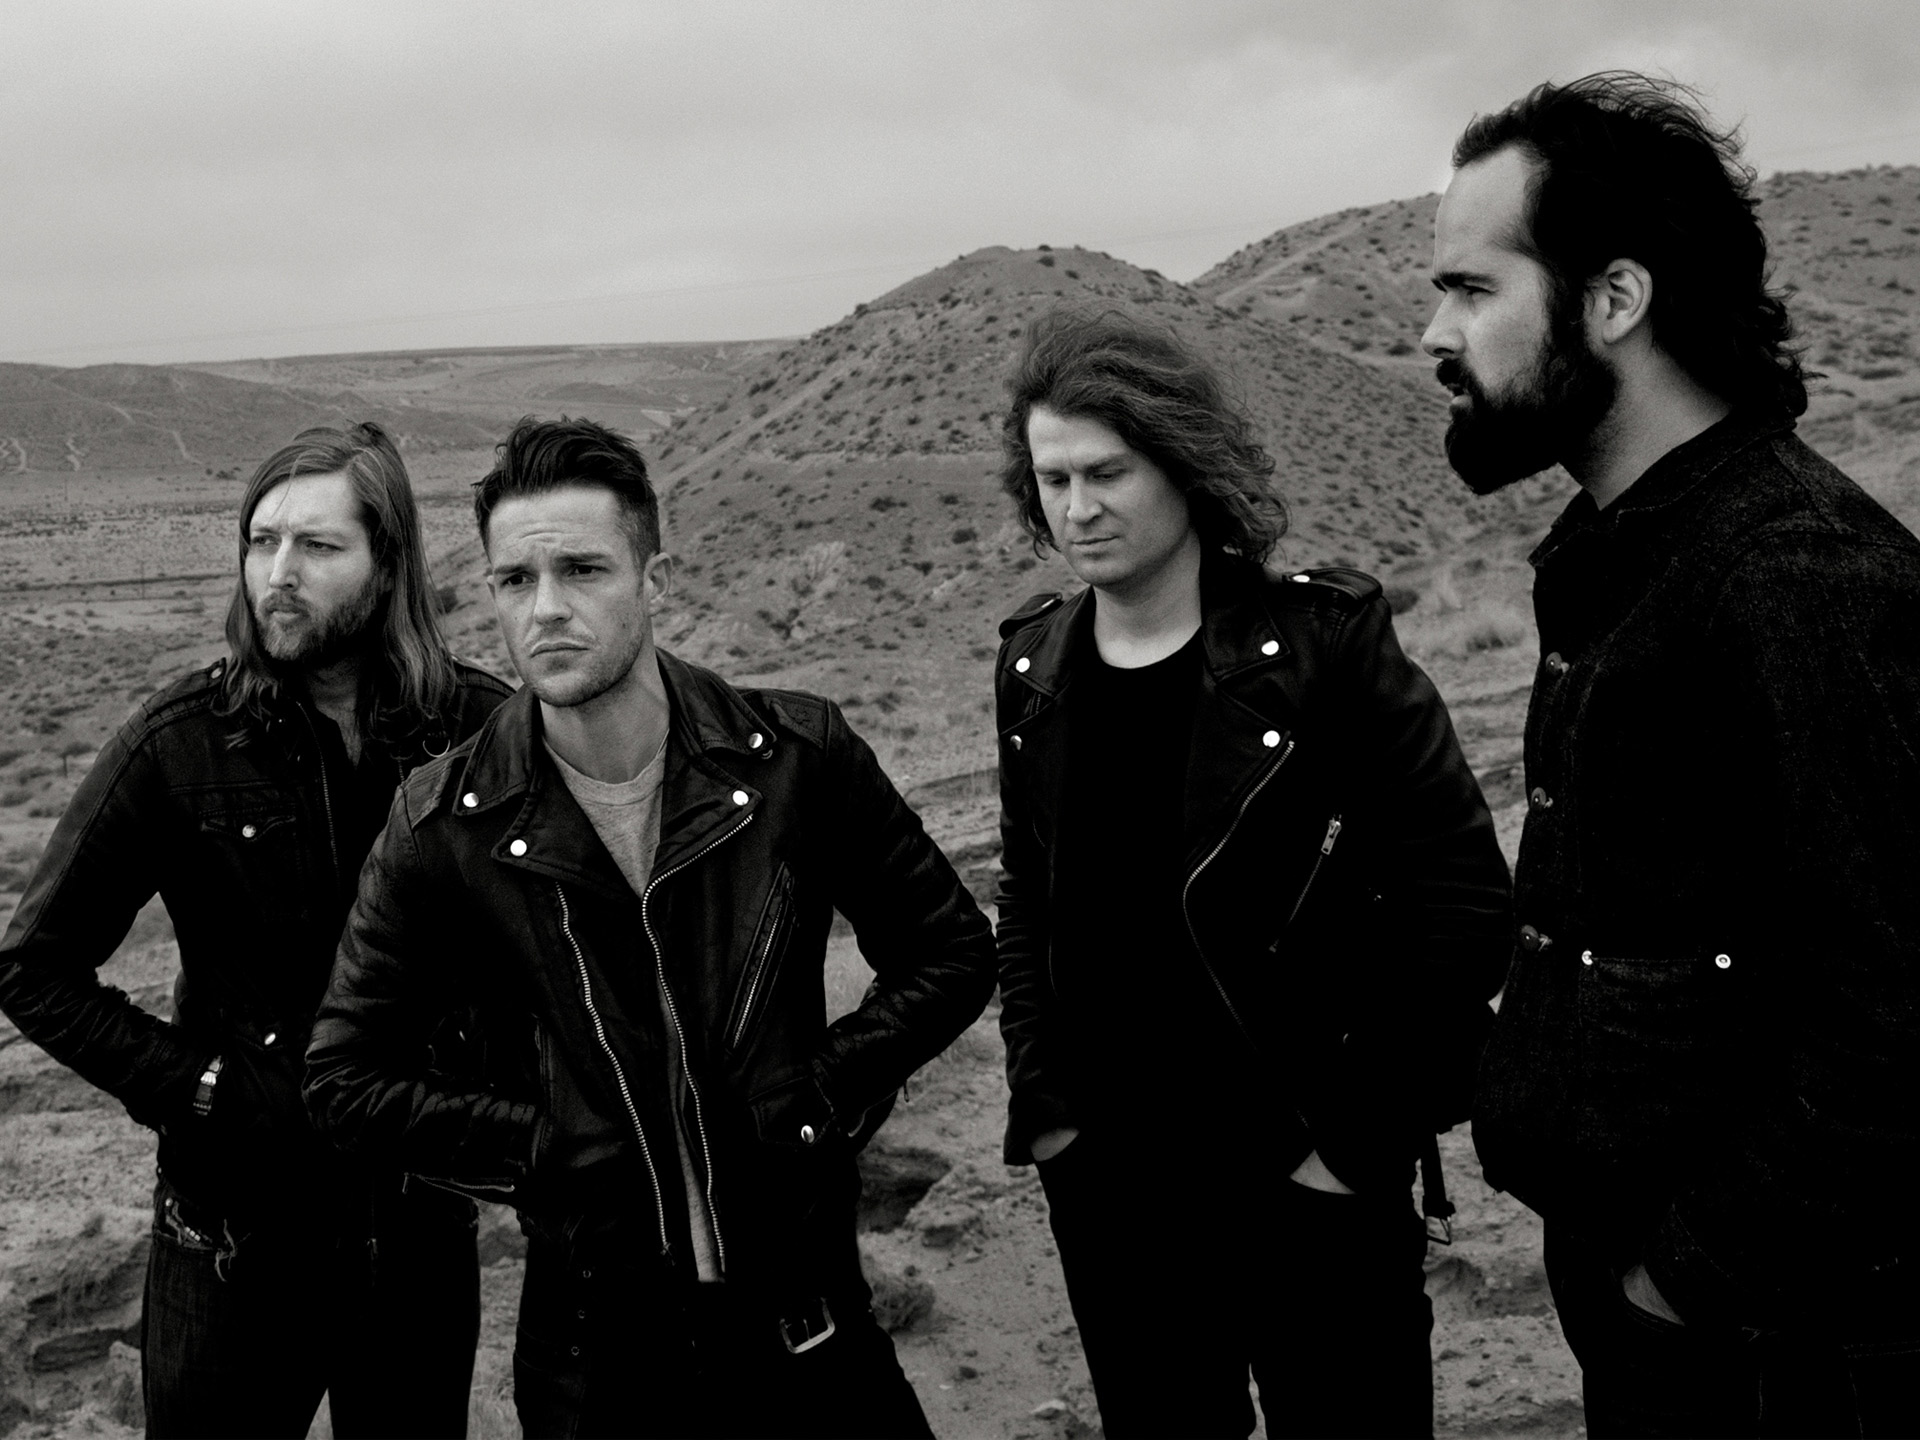 The Killers presentó una nueva canción "Run For Cover" como previa al estreno de su nuevo sencillo.